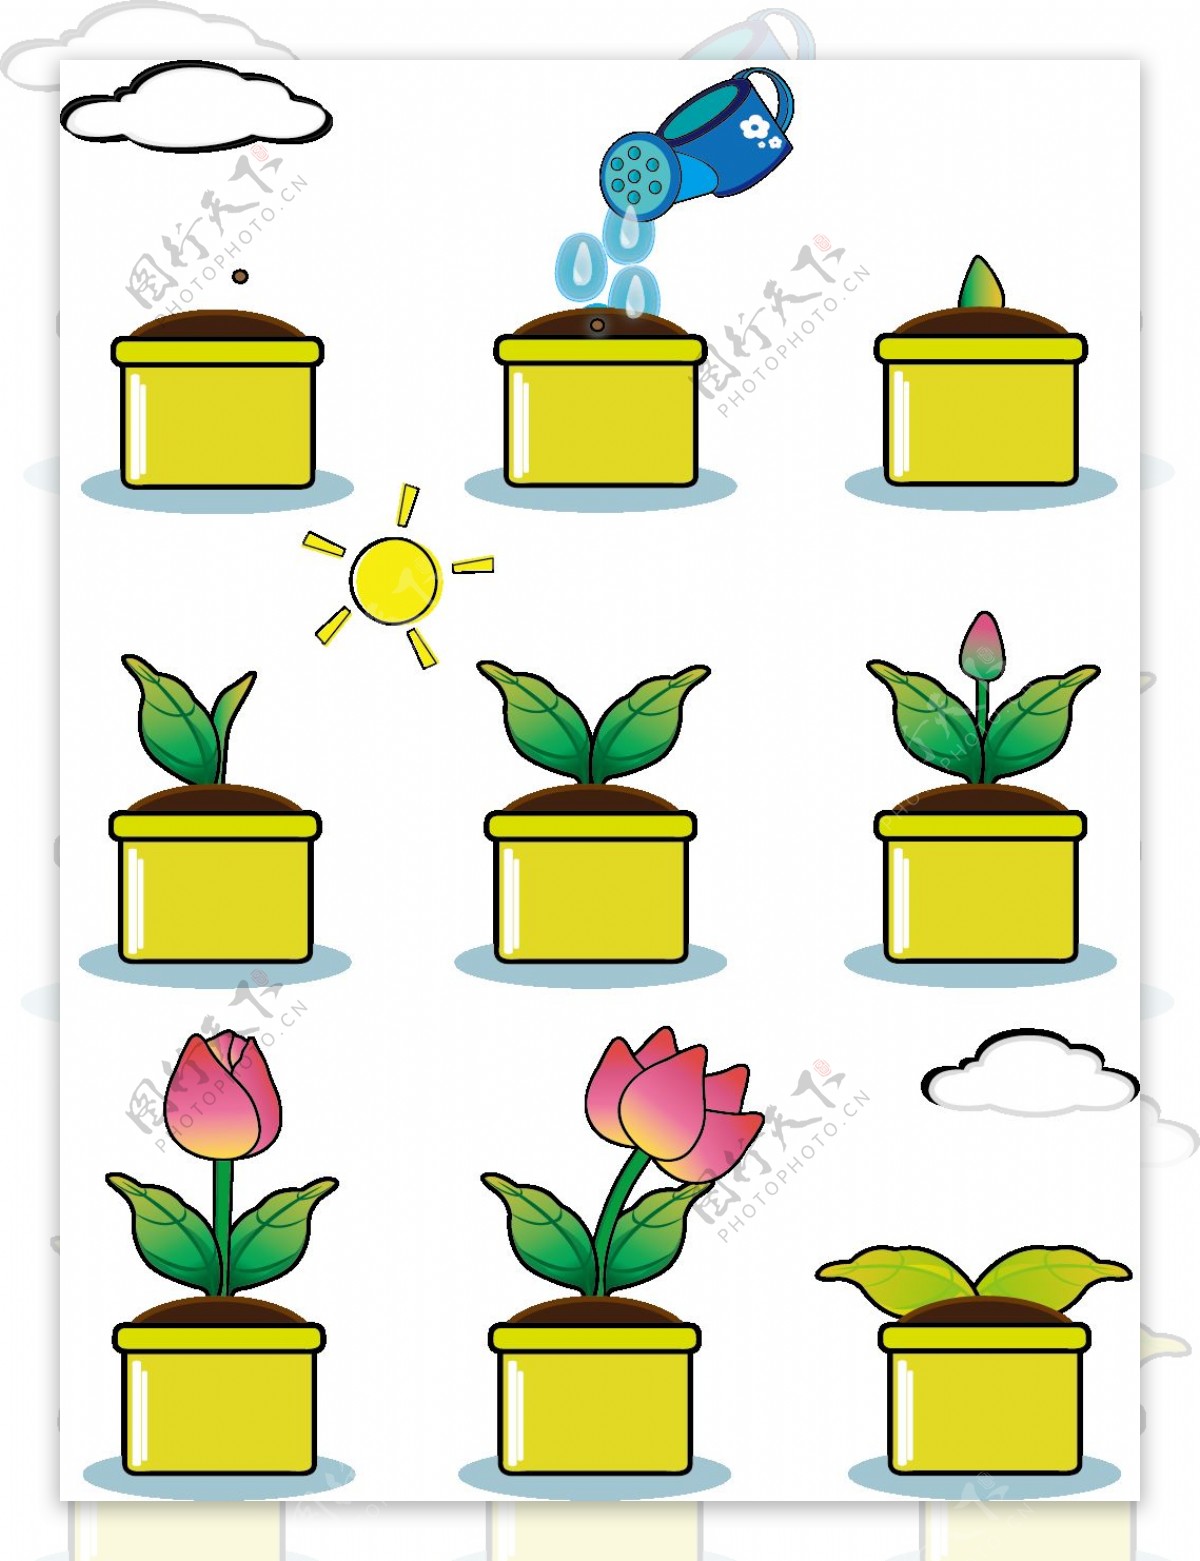 手绘风卡通渐变花朵植物生长过程套图元素